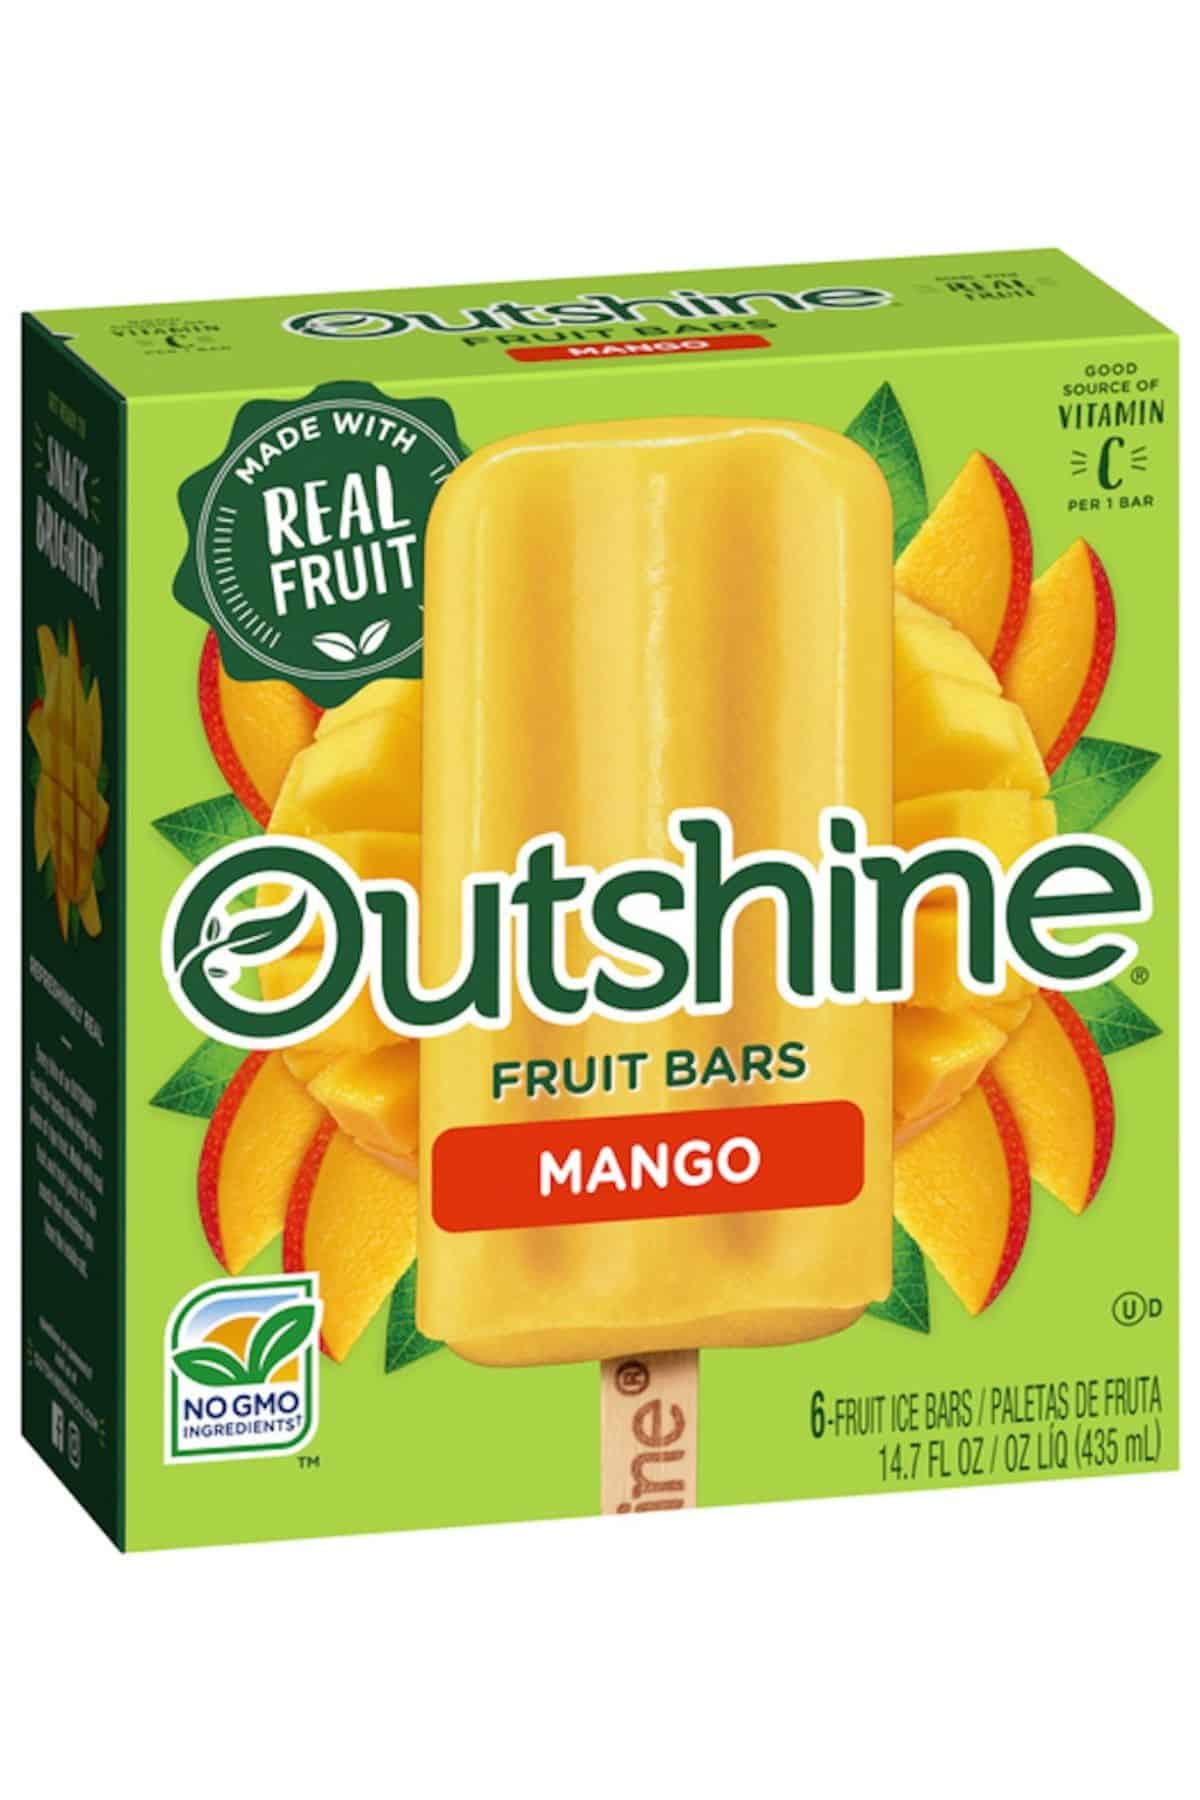 a box of Mango Outshine fruit bars.